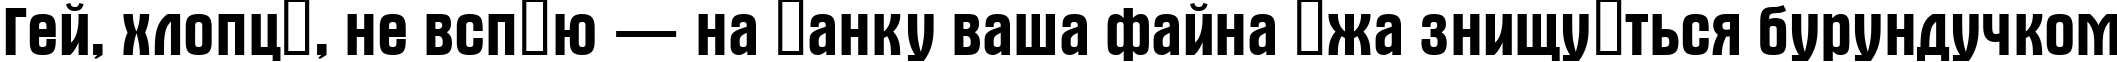 Пример написания шрифтом a_Alterna текста на украинском